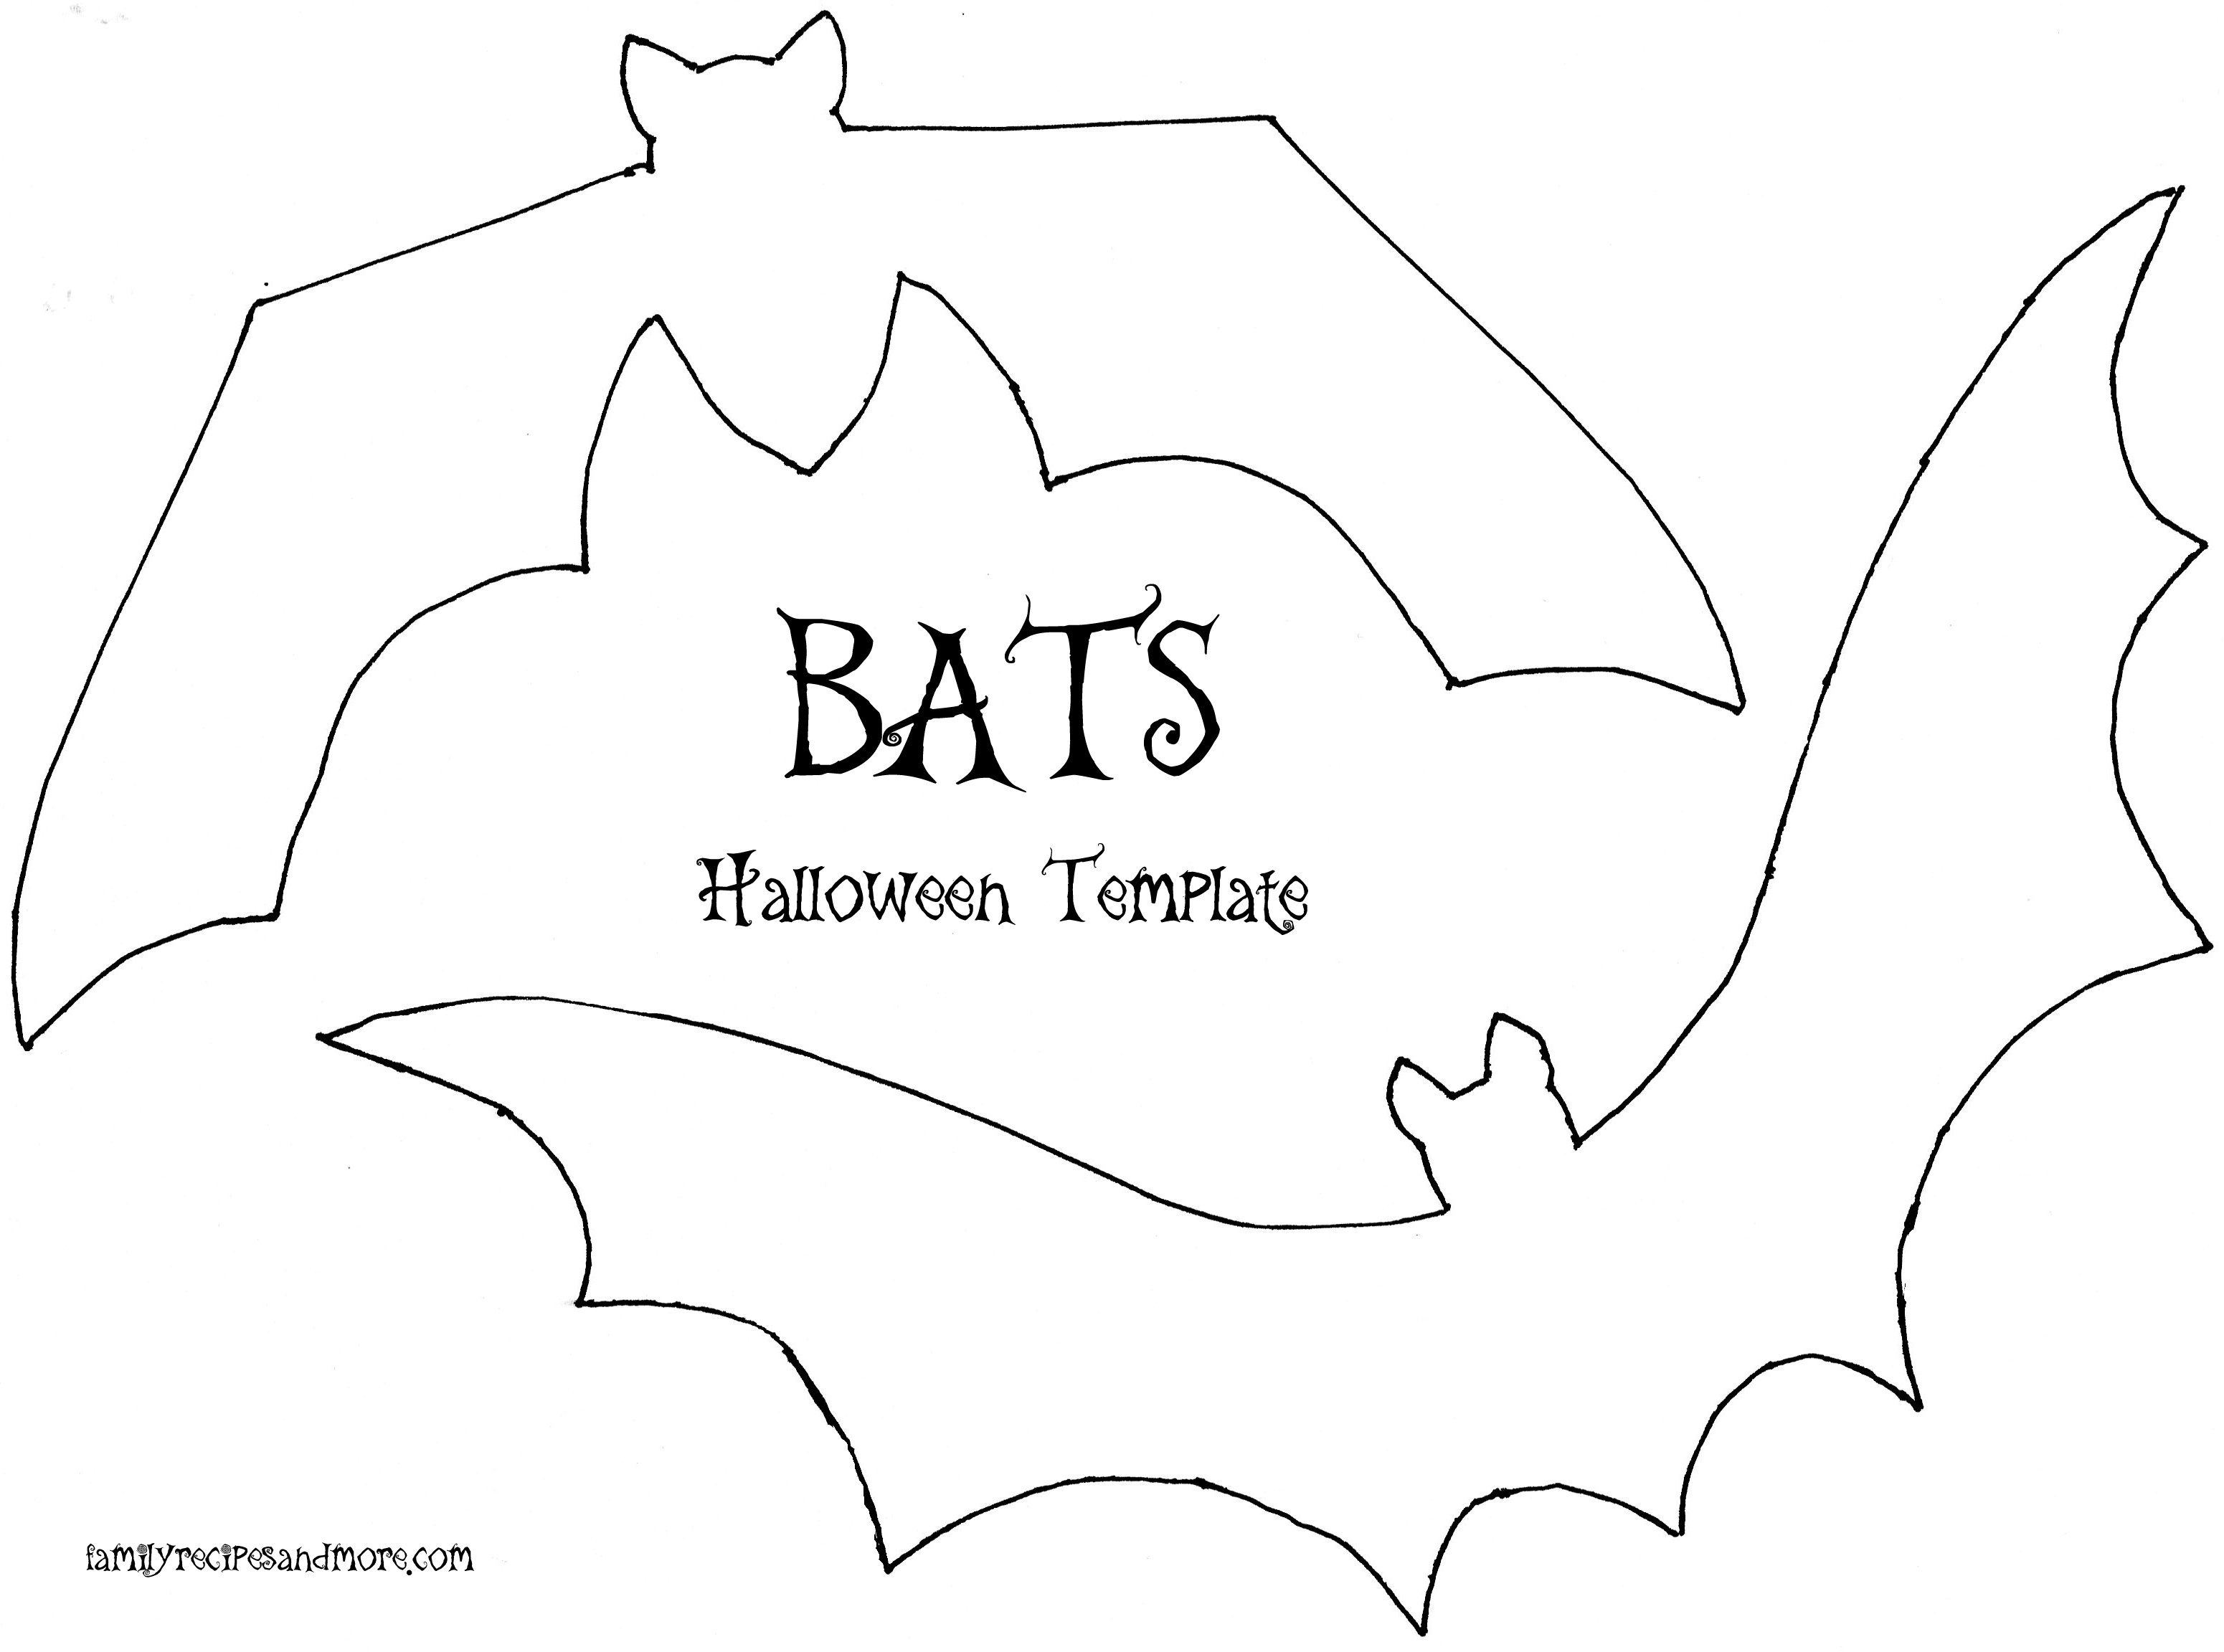 Bats Template